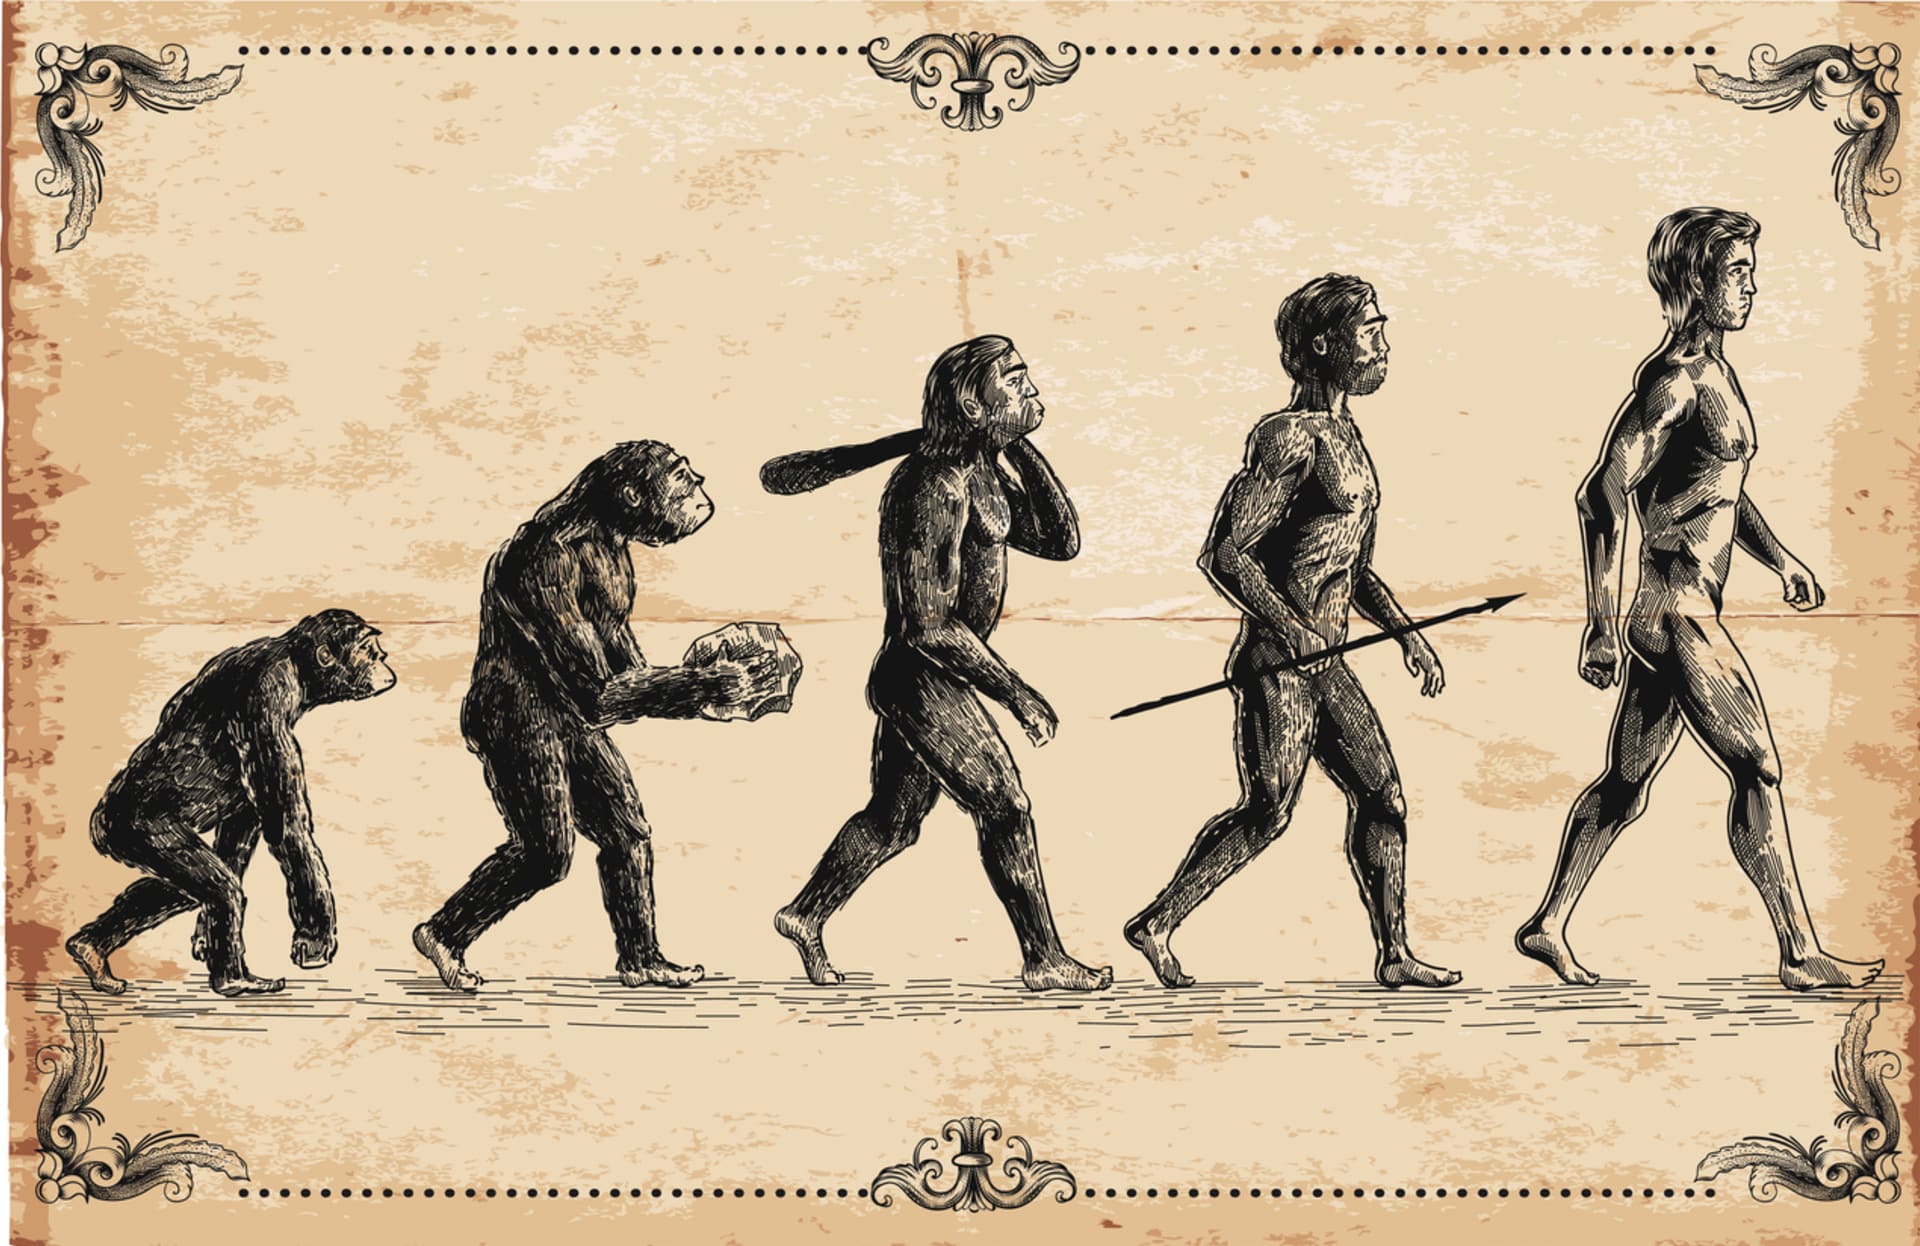 Evoluce nás o ocas připravila před 25 miliony let